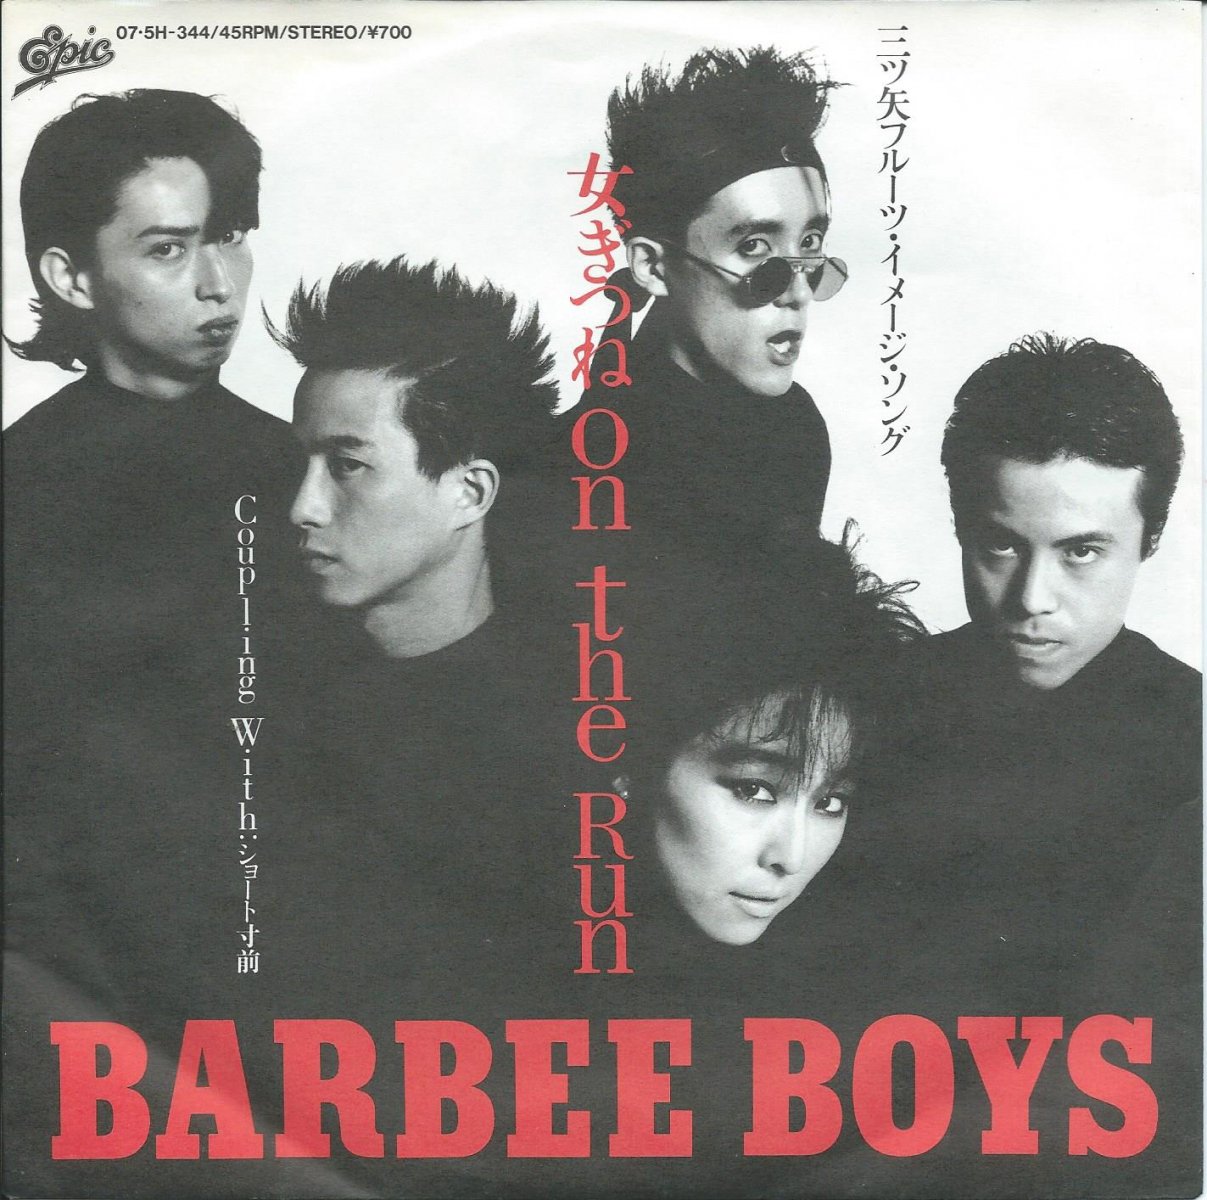 バービー・ボーイズ BARBEE BOYS / 女ぎつねON THE RUN / ショート寸前 (7) - HIP TANK RECORDS